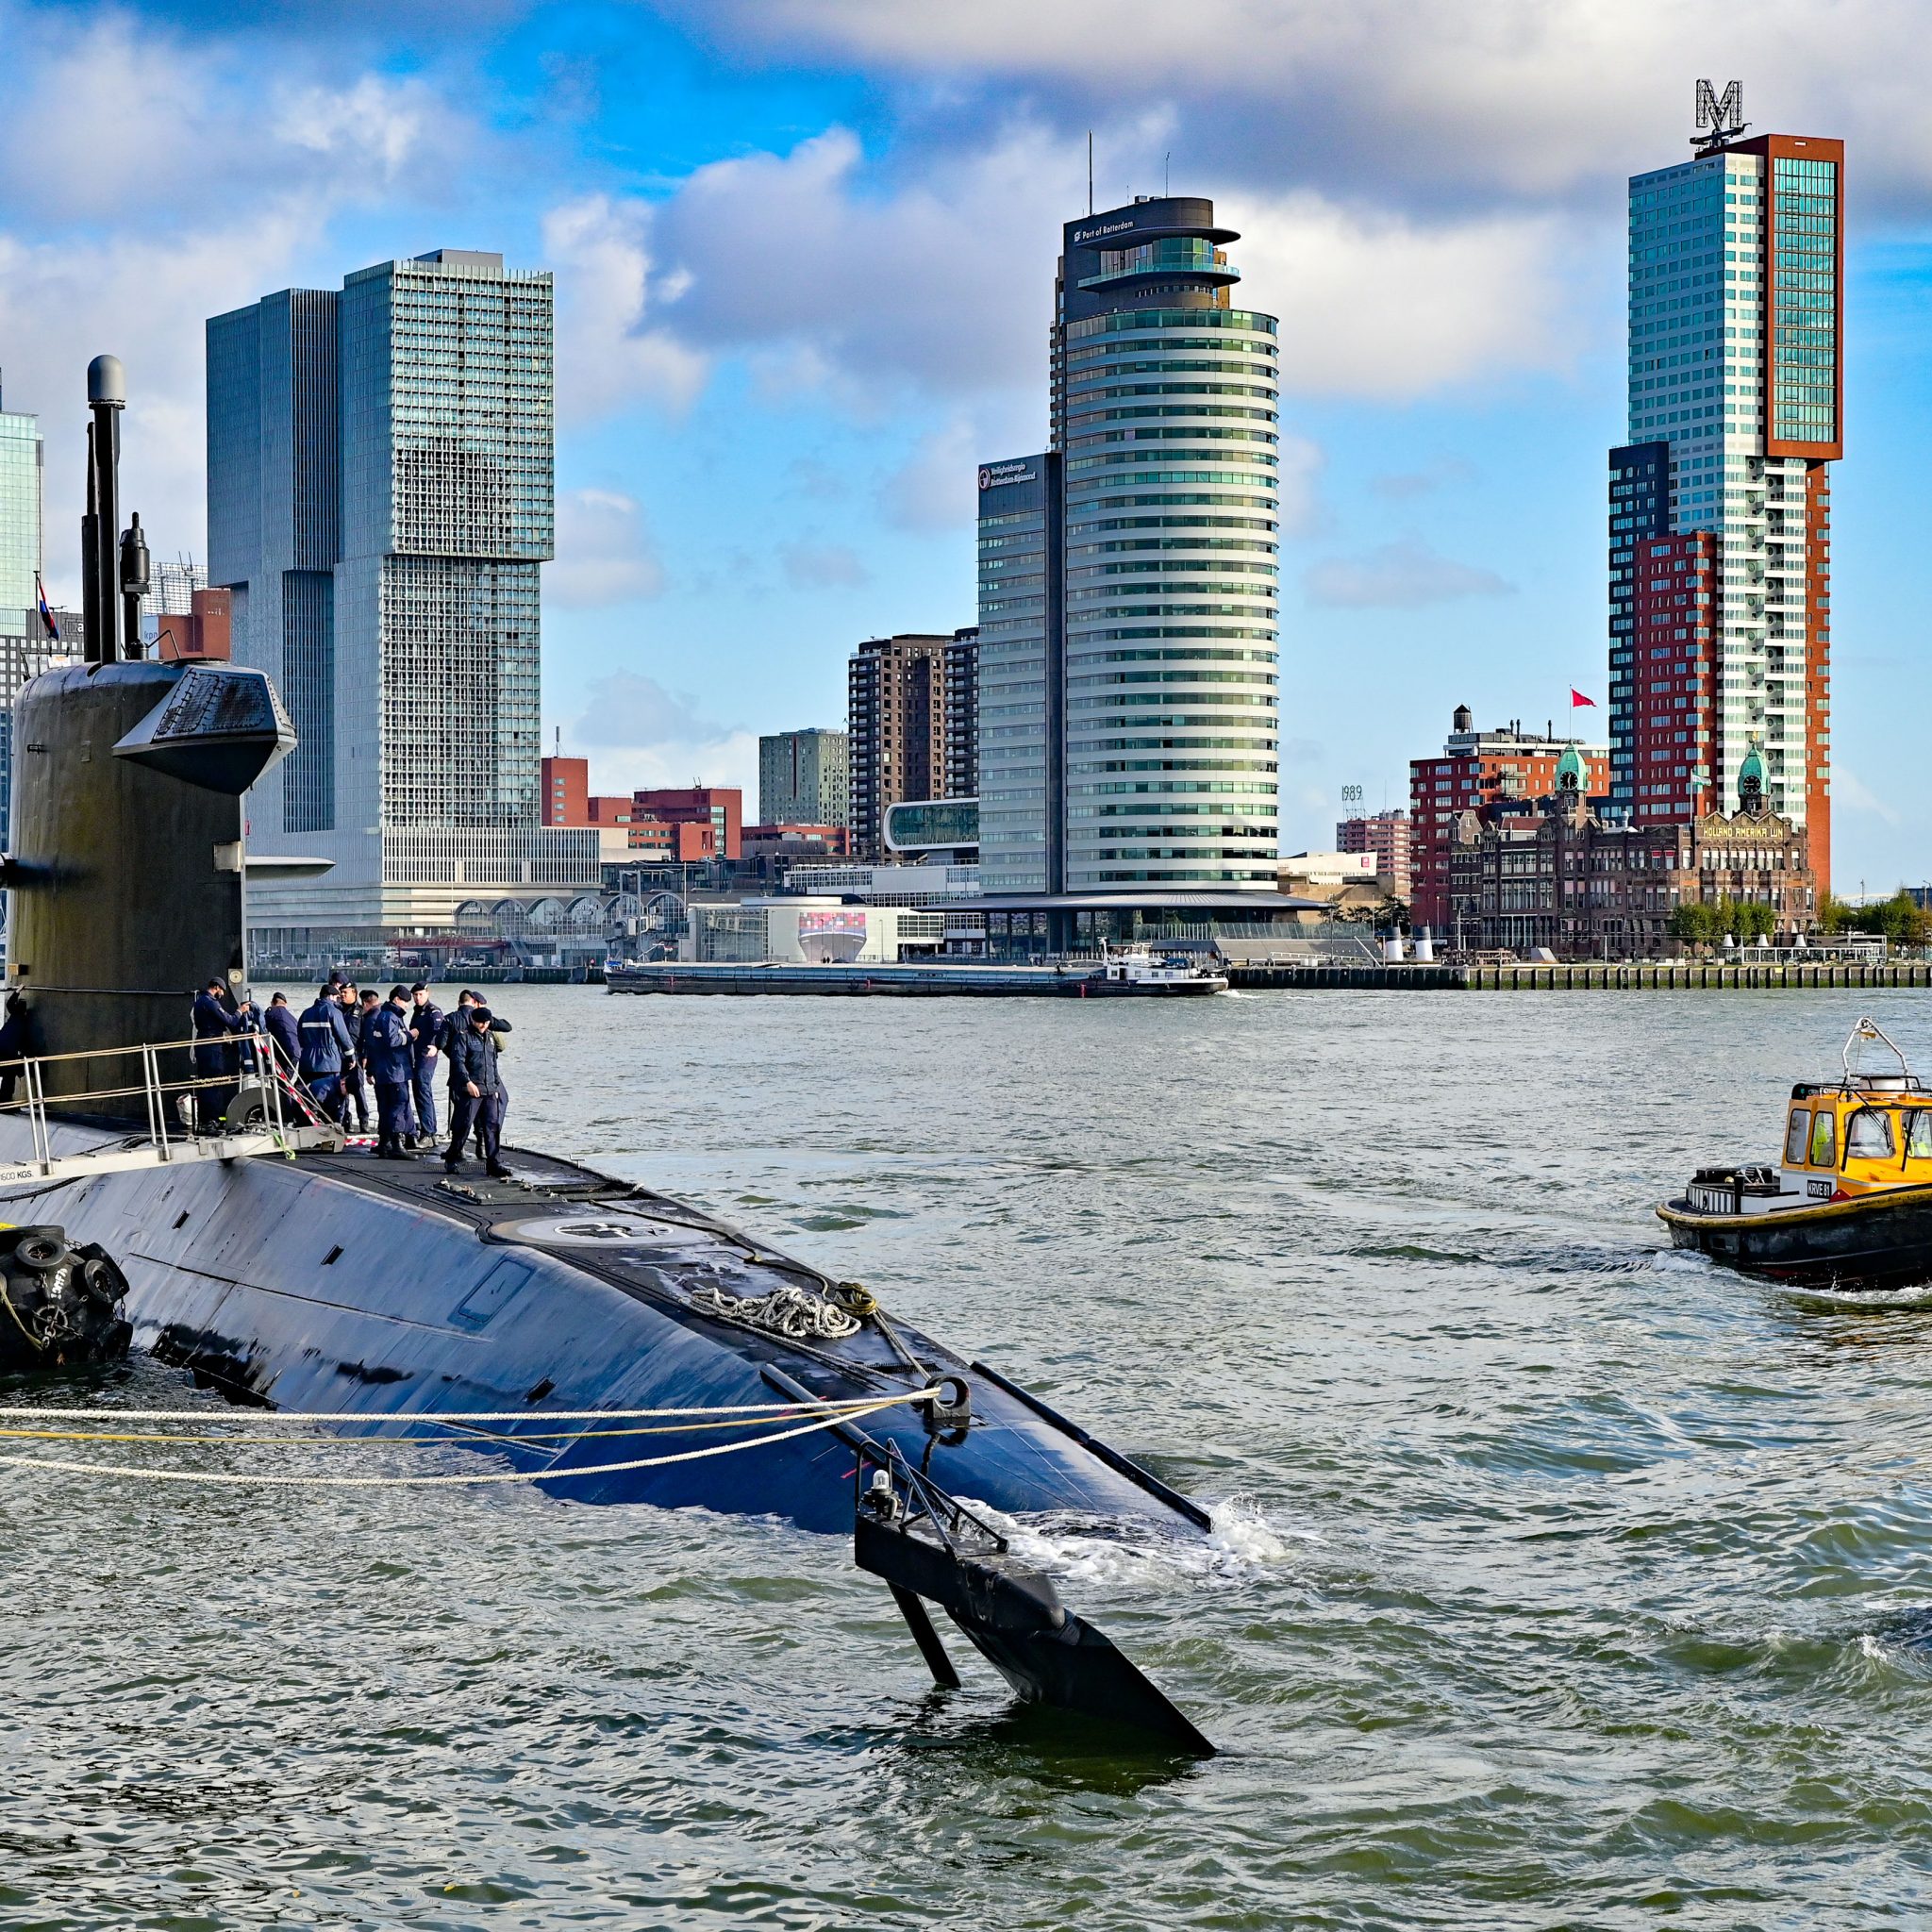 De onderzeeboot ligt aan de Parkkade in Rotterdam. (Foto MediaTV)